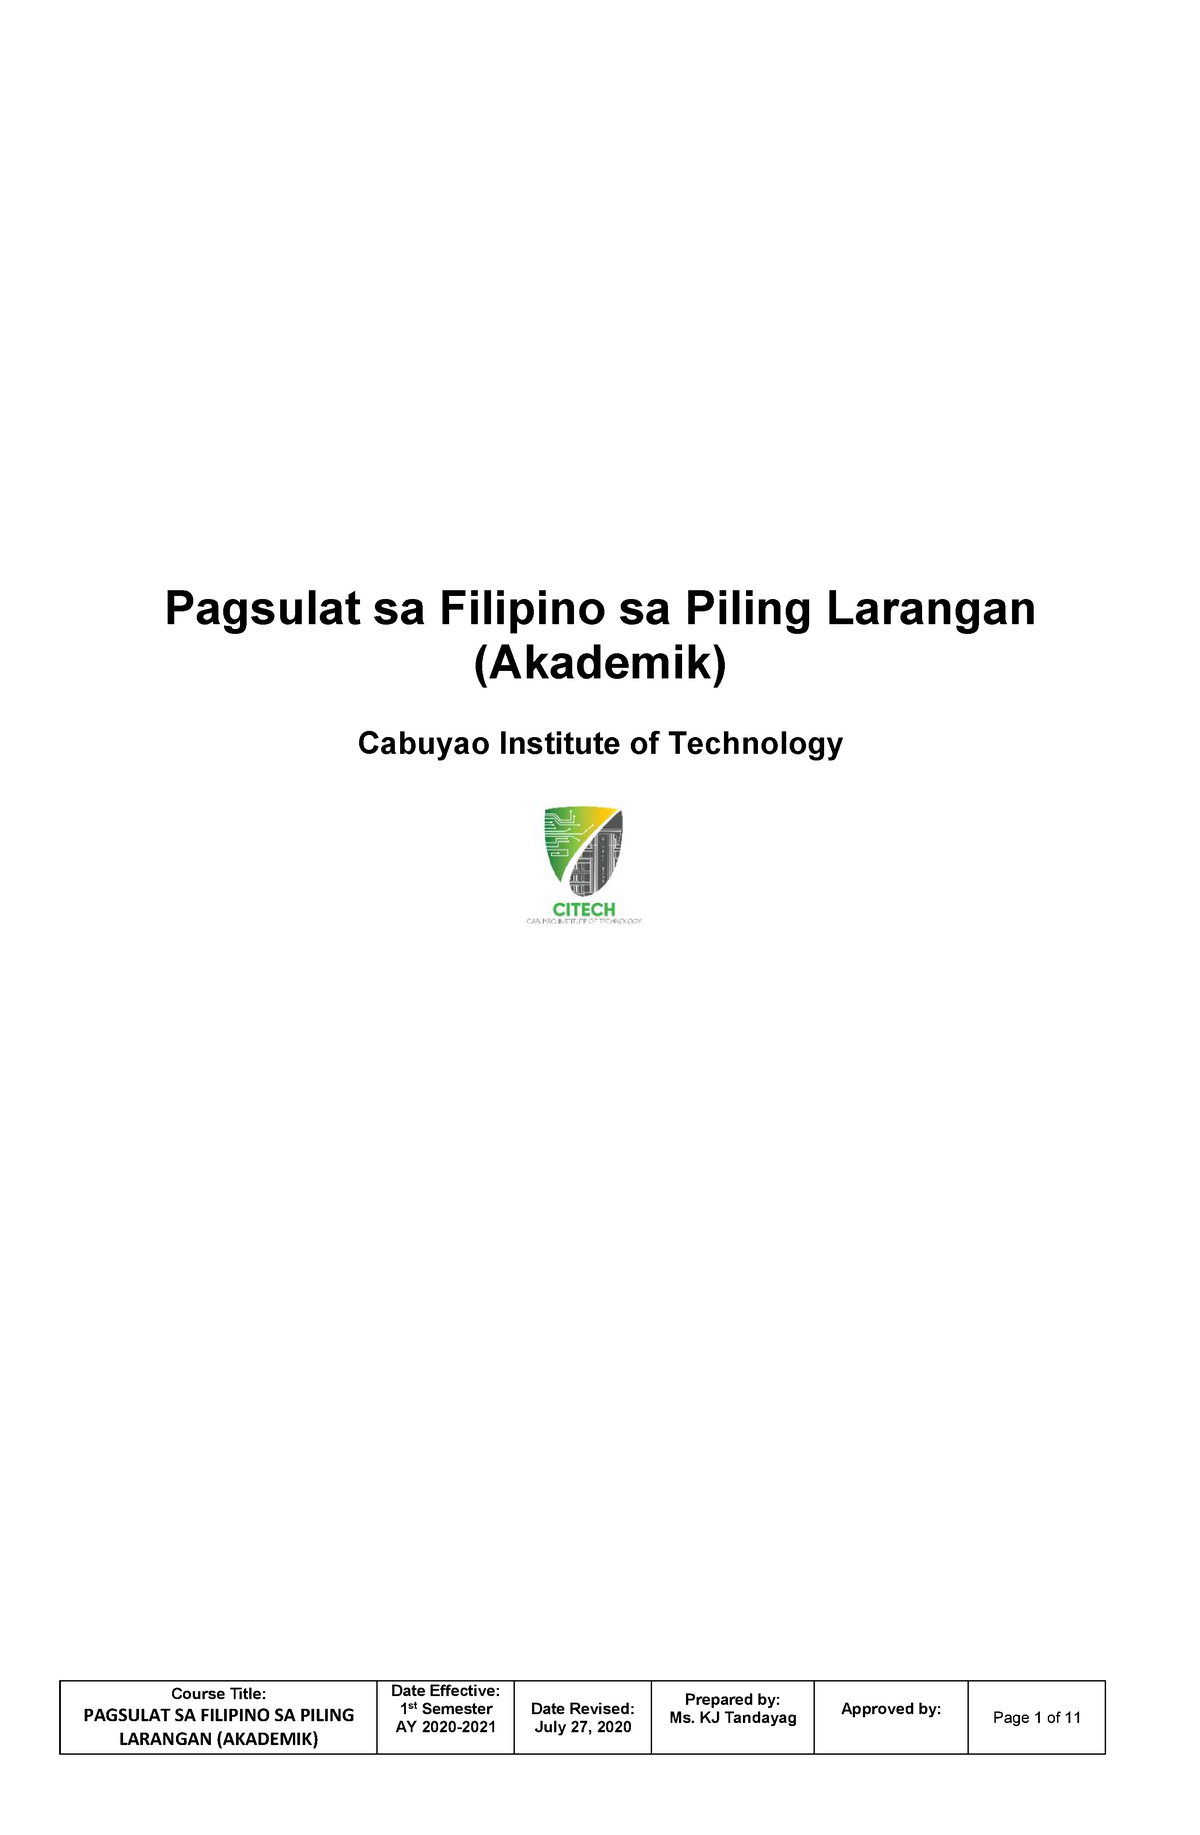 Lakbay Sanaysay Module 4 Sa Piling Larang Pagsulat Sa Filipino Sa Images 9668